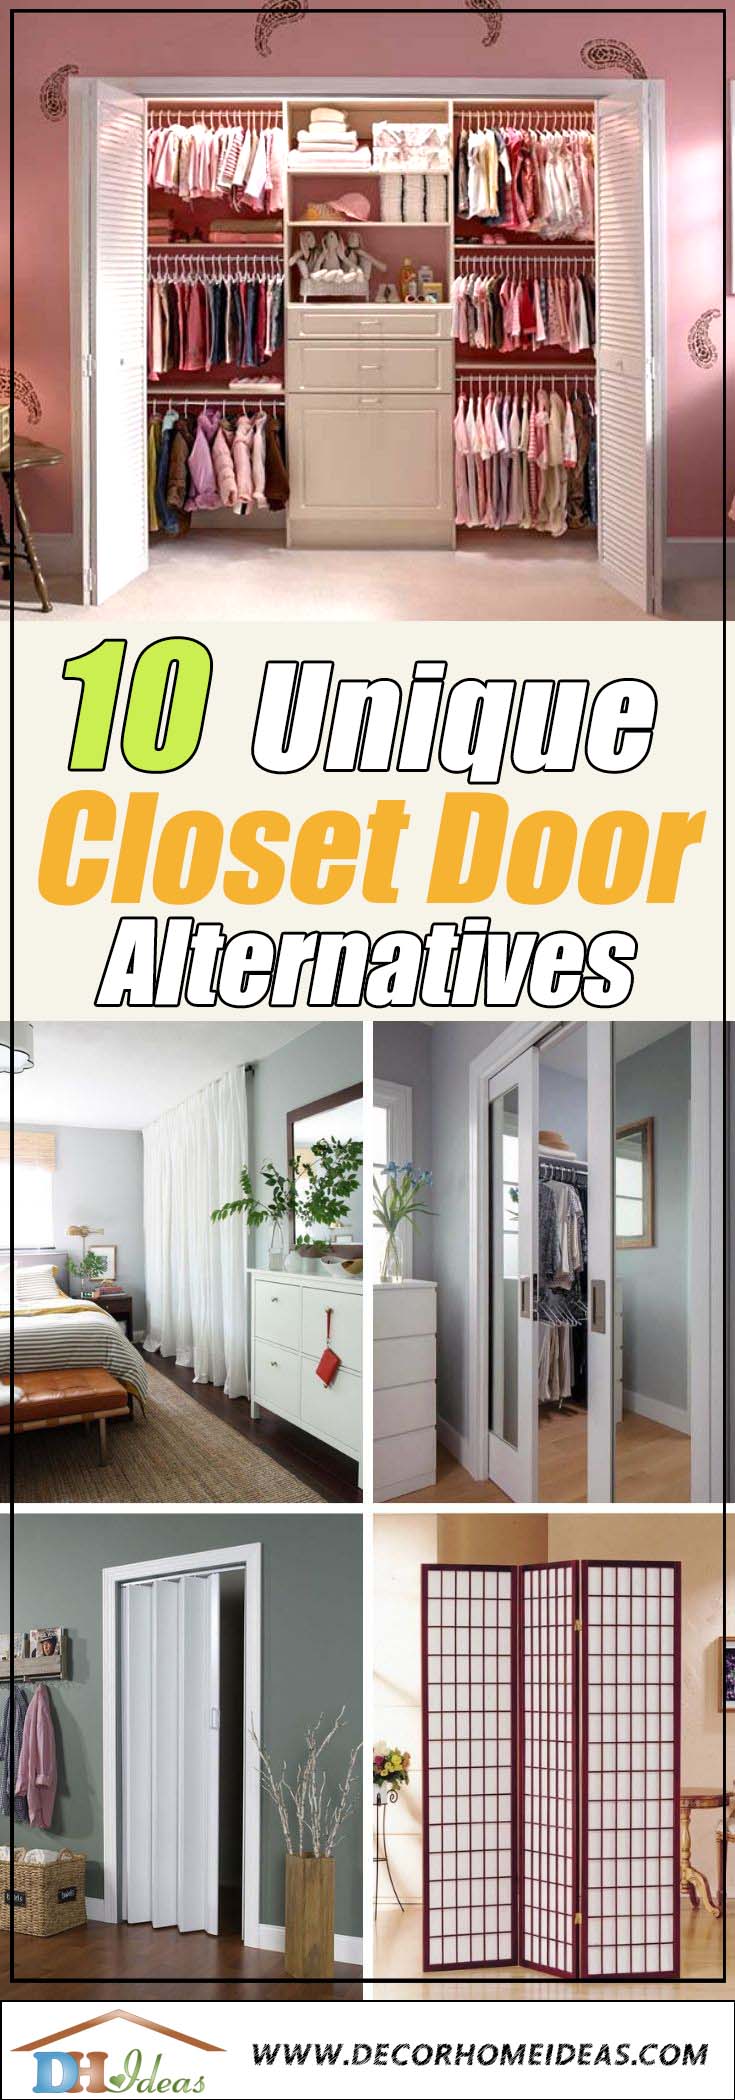 Best Closet Door Alternatives and Options